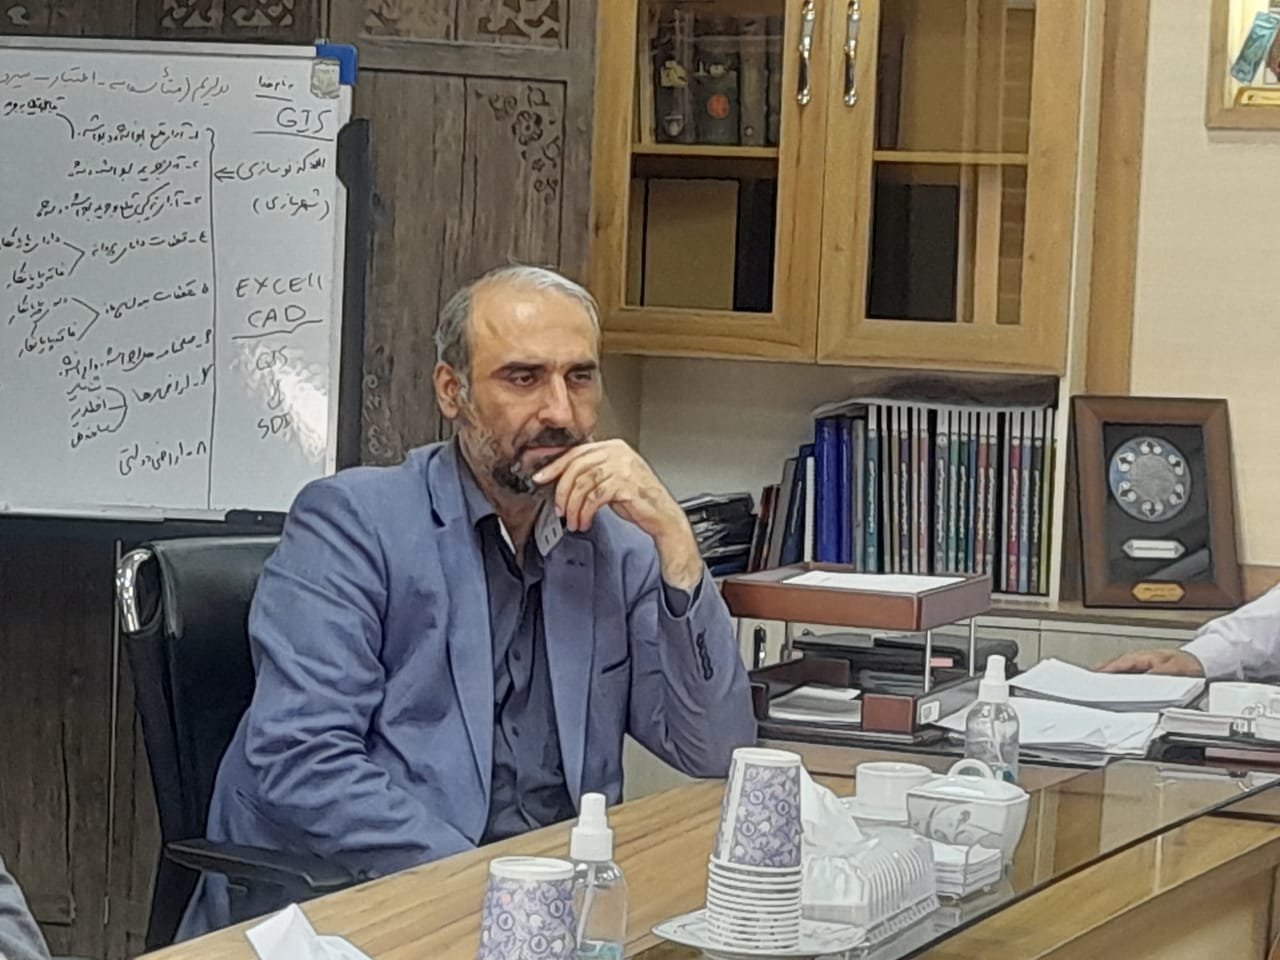 دیدار مديرعامل شركت همیاران شمال شرق با شهردار منطقه ۱۰ شهرداری مشهد